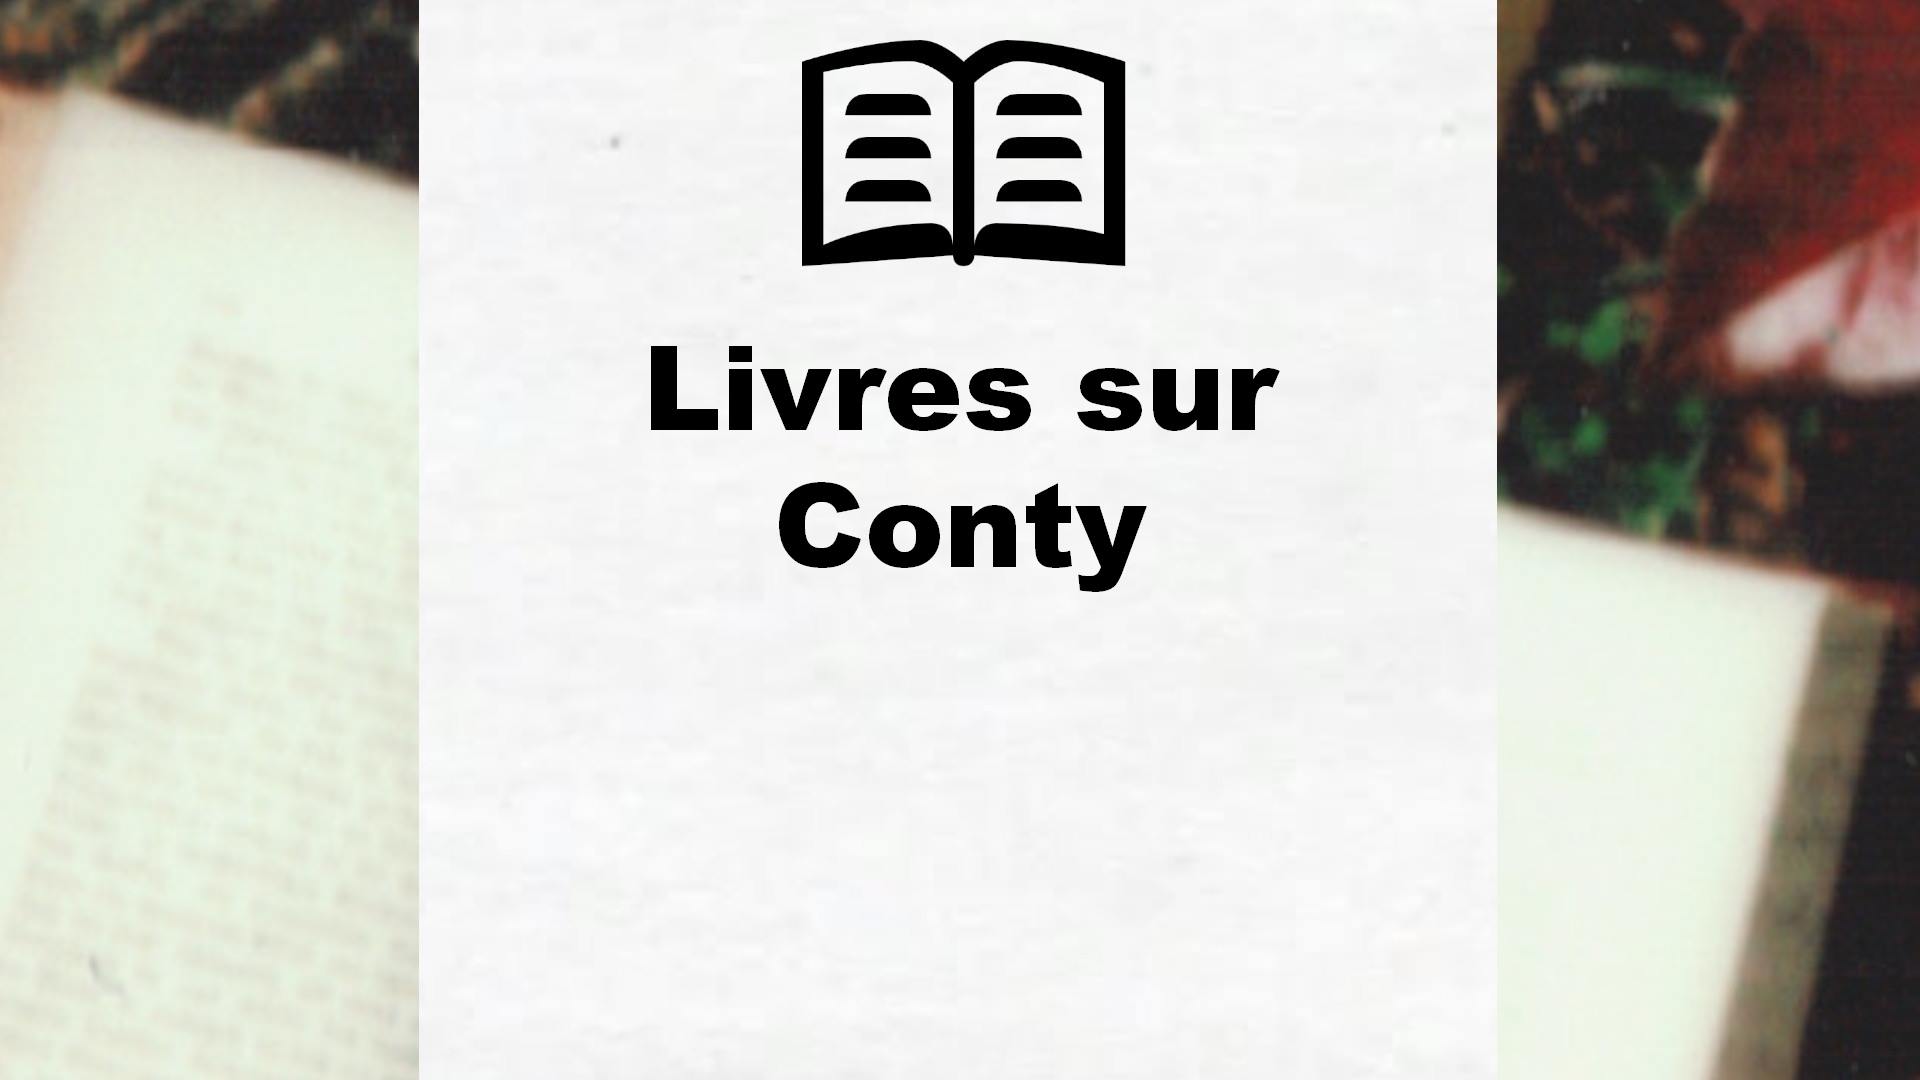 Livres sur Conty